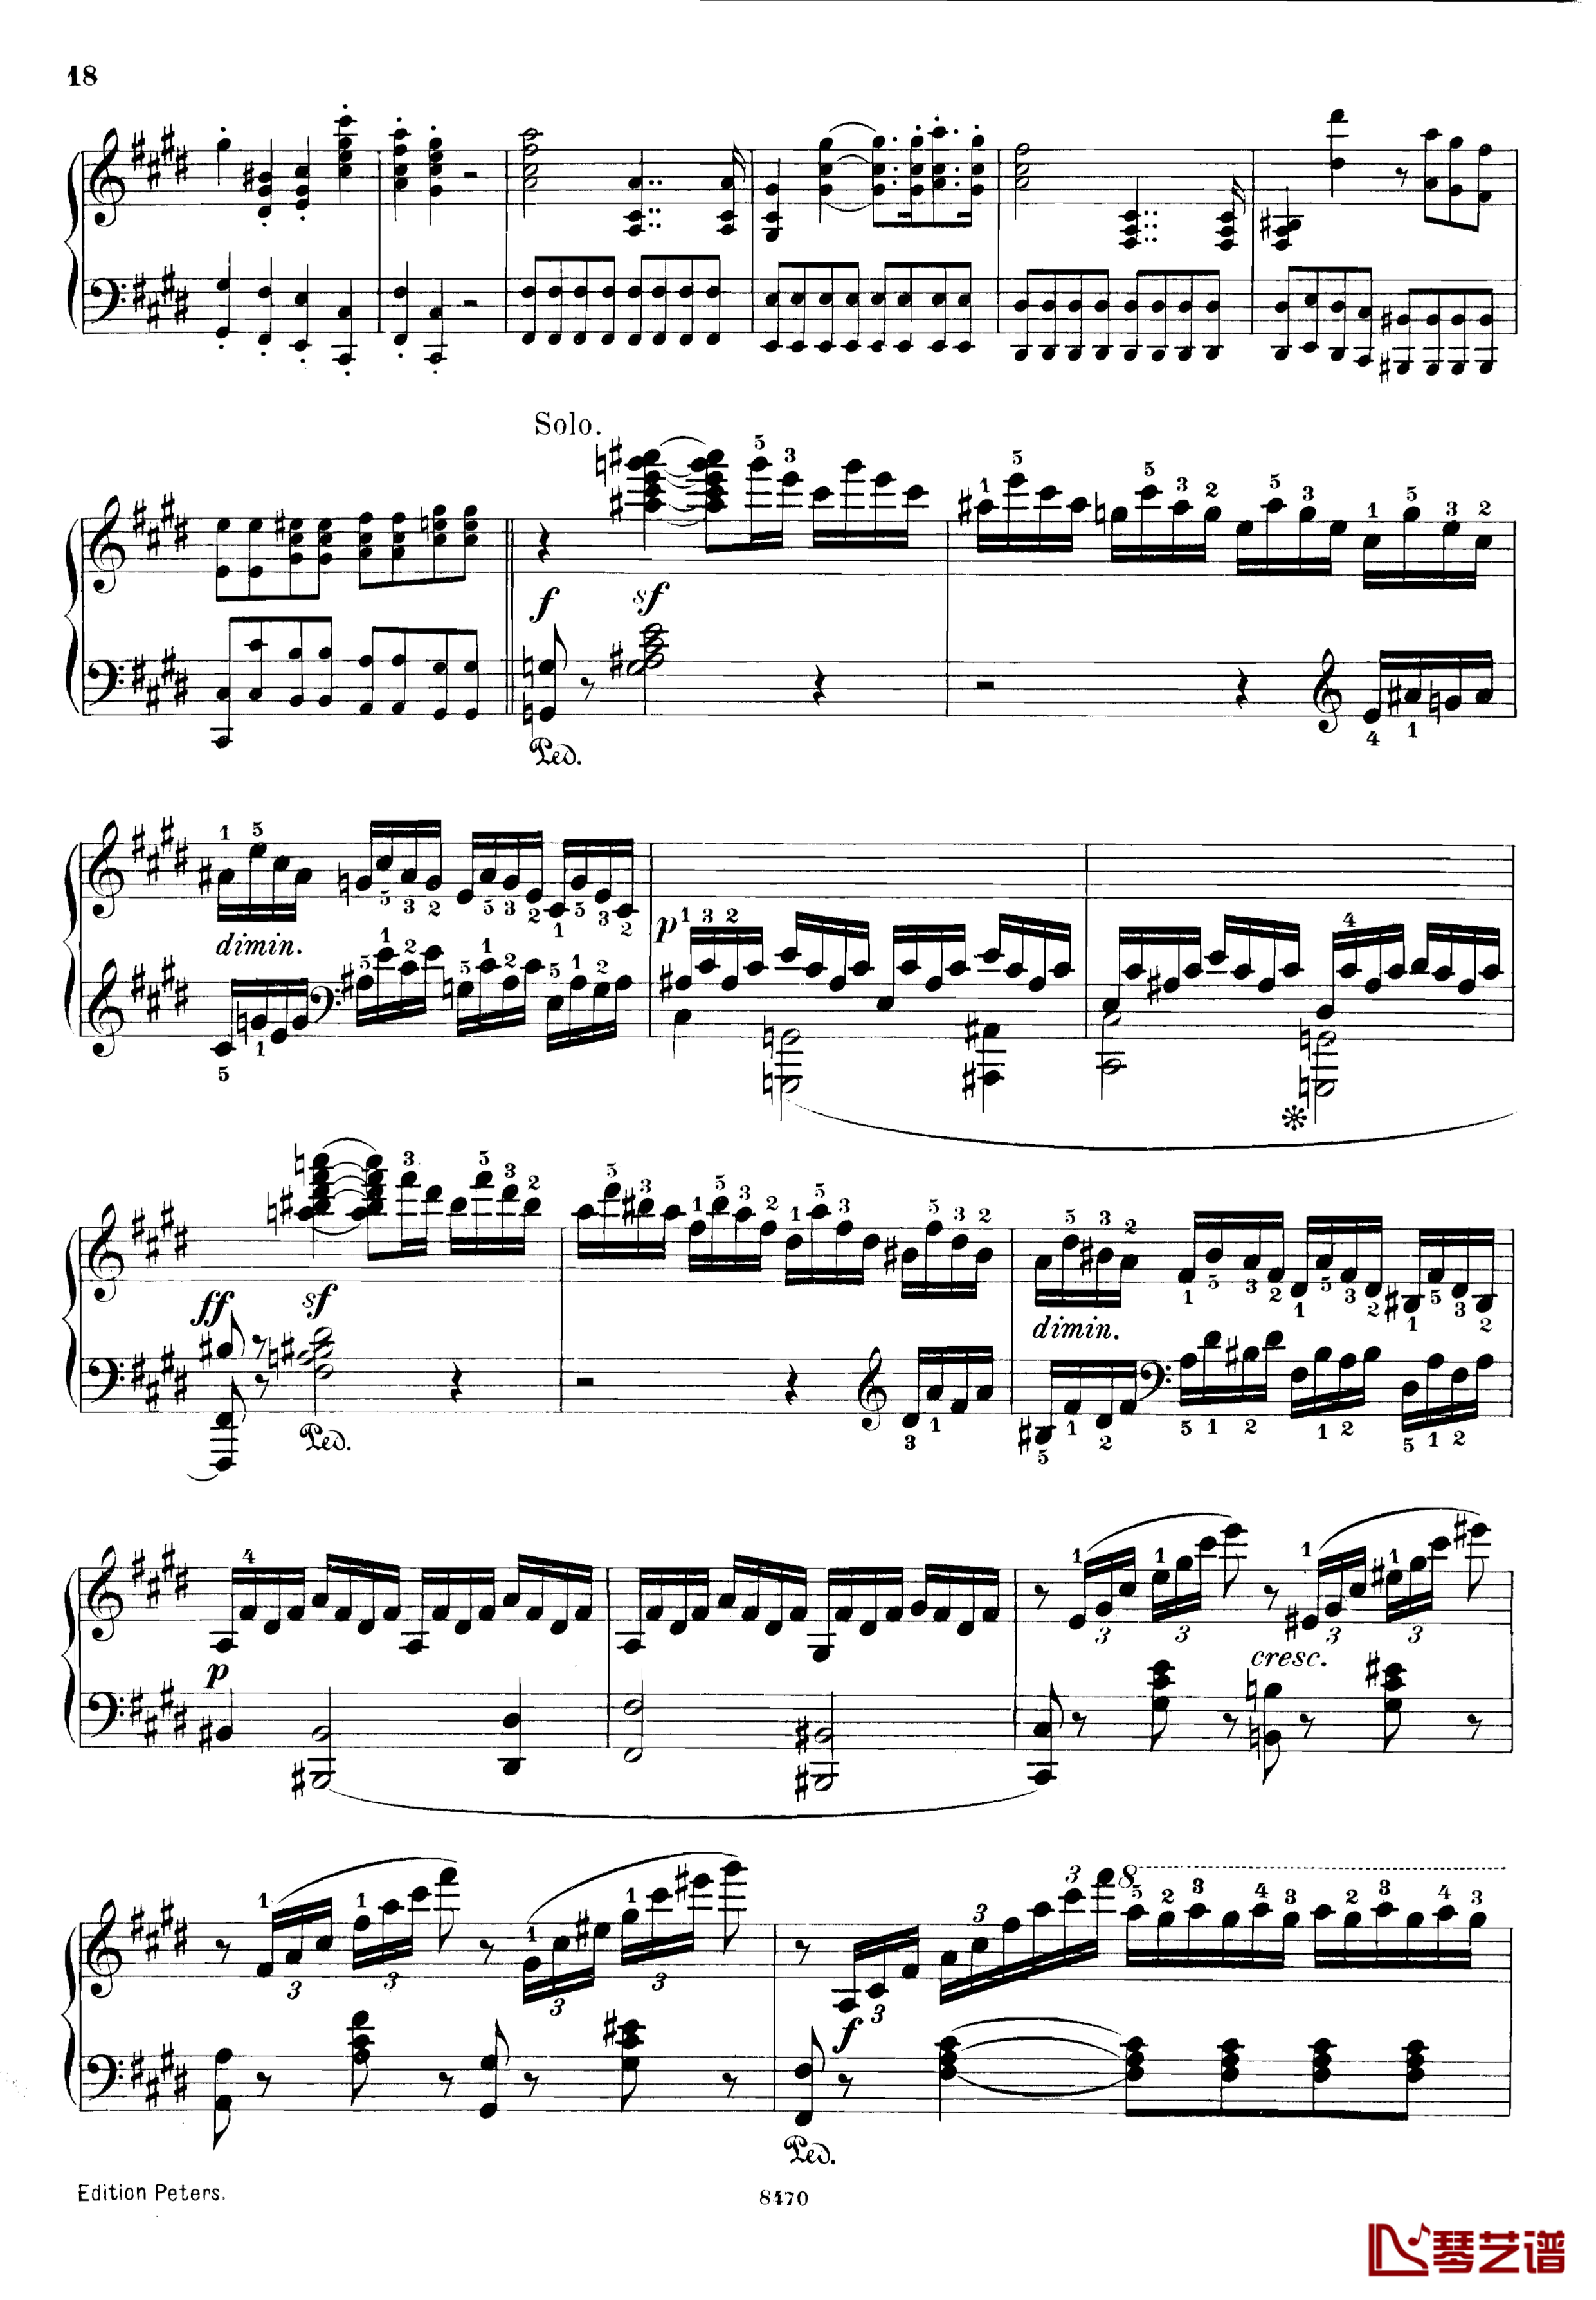 升c小调第三钢琴协奏曲Op.55钢琴谱-克里斯蒂安-里斯18